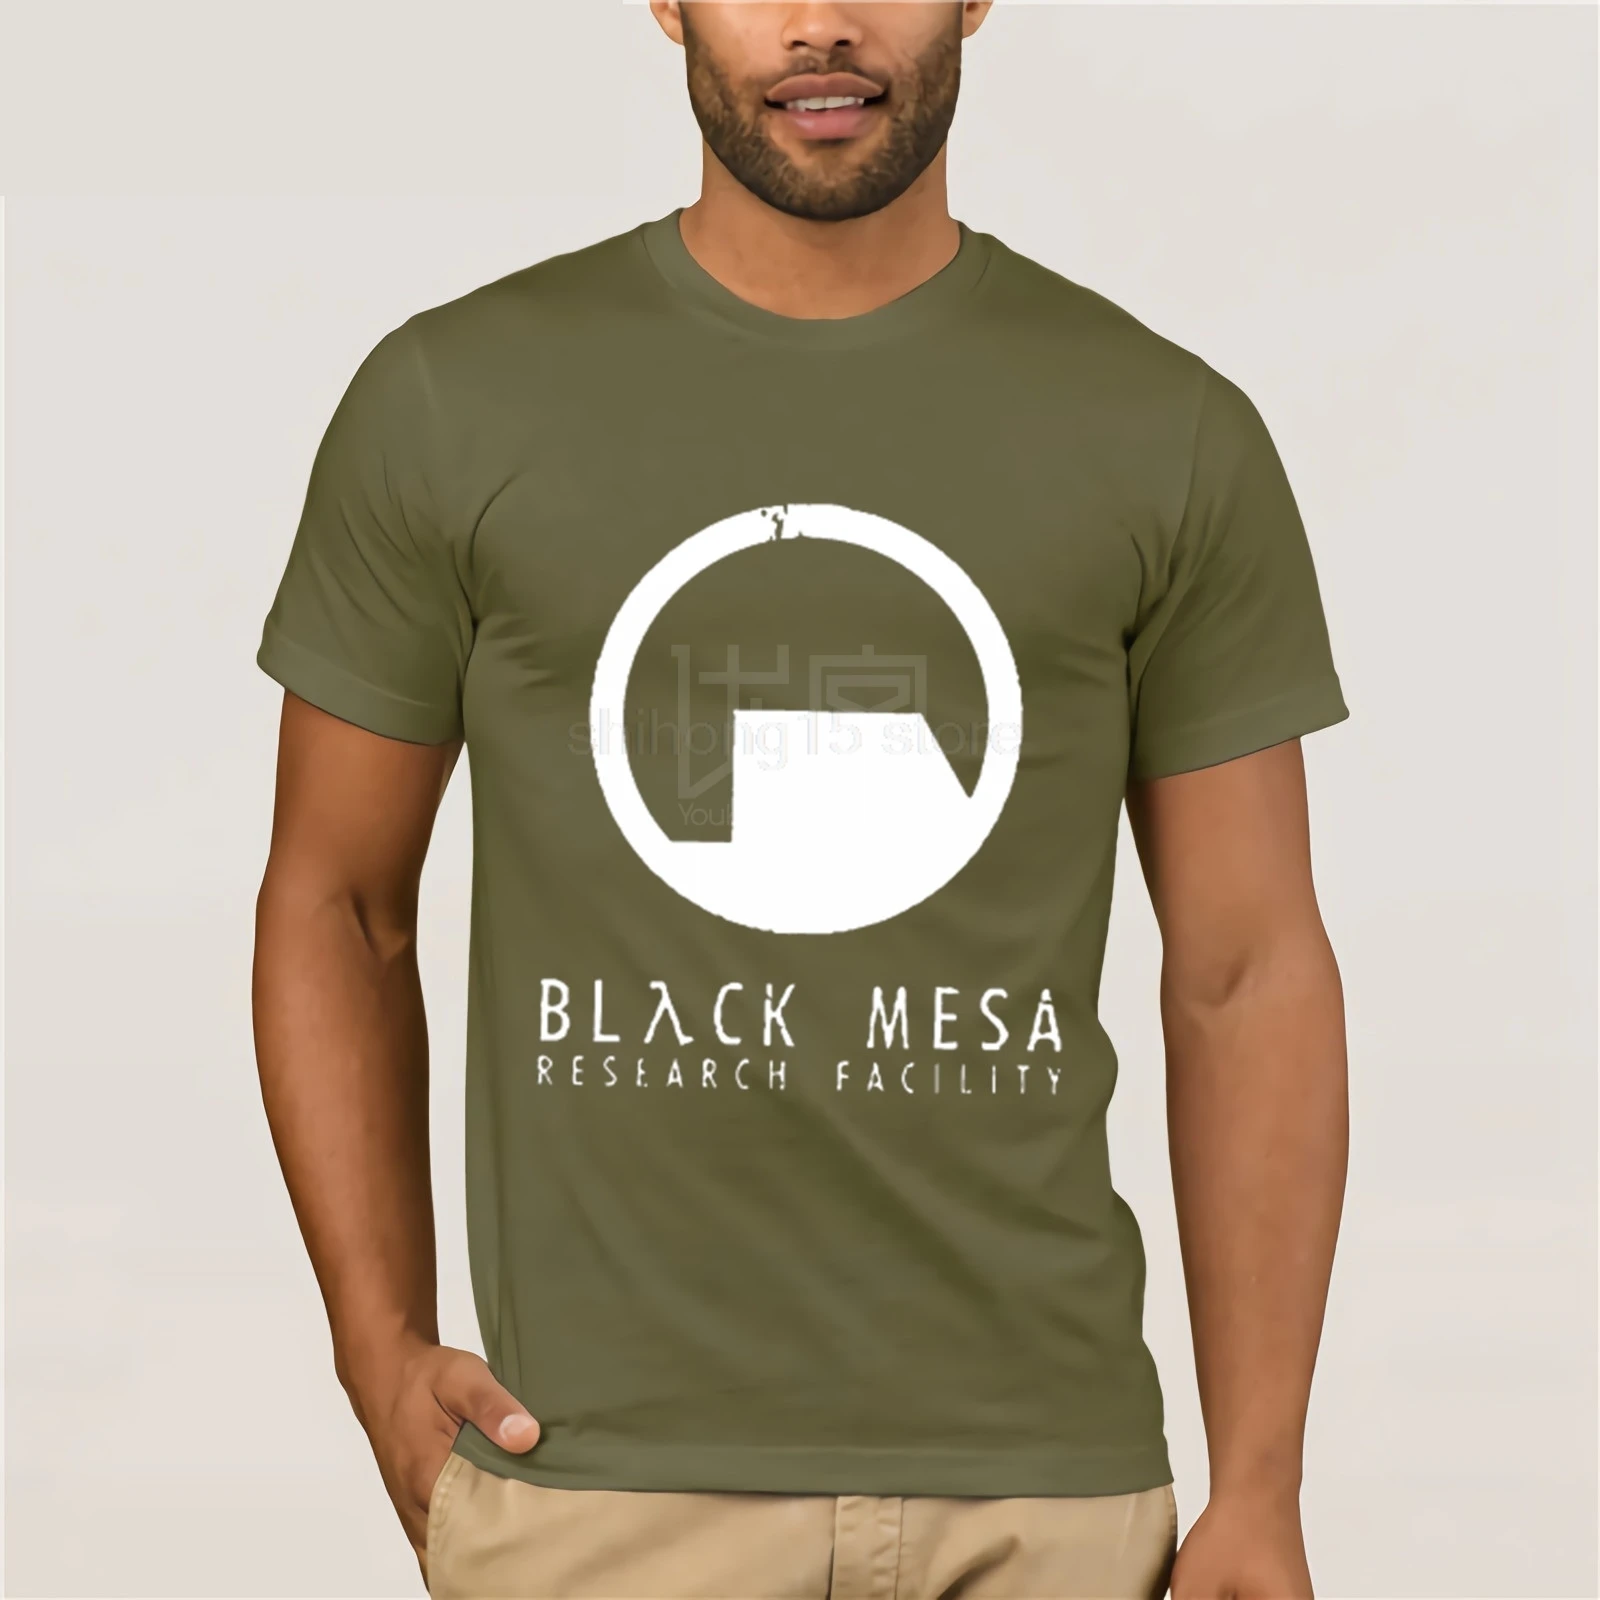 Black Mesa Half Life Футболка мужская крутая футболка европейские размеры-XXXL топы летние футболки хлопковая Футболка с круглым вырезом - Цвет: army green